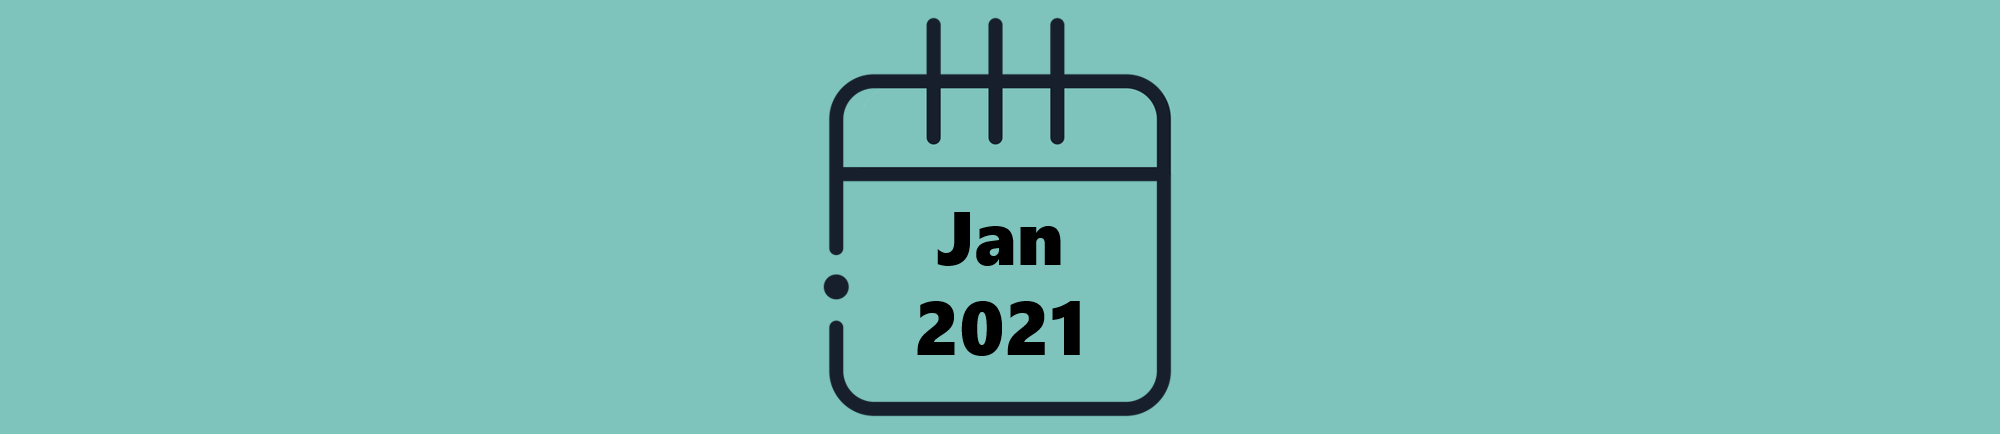 Indicações do Mês de Janeiro (2021)